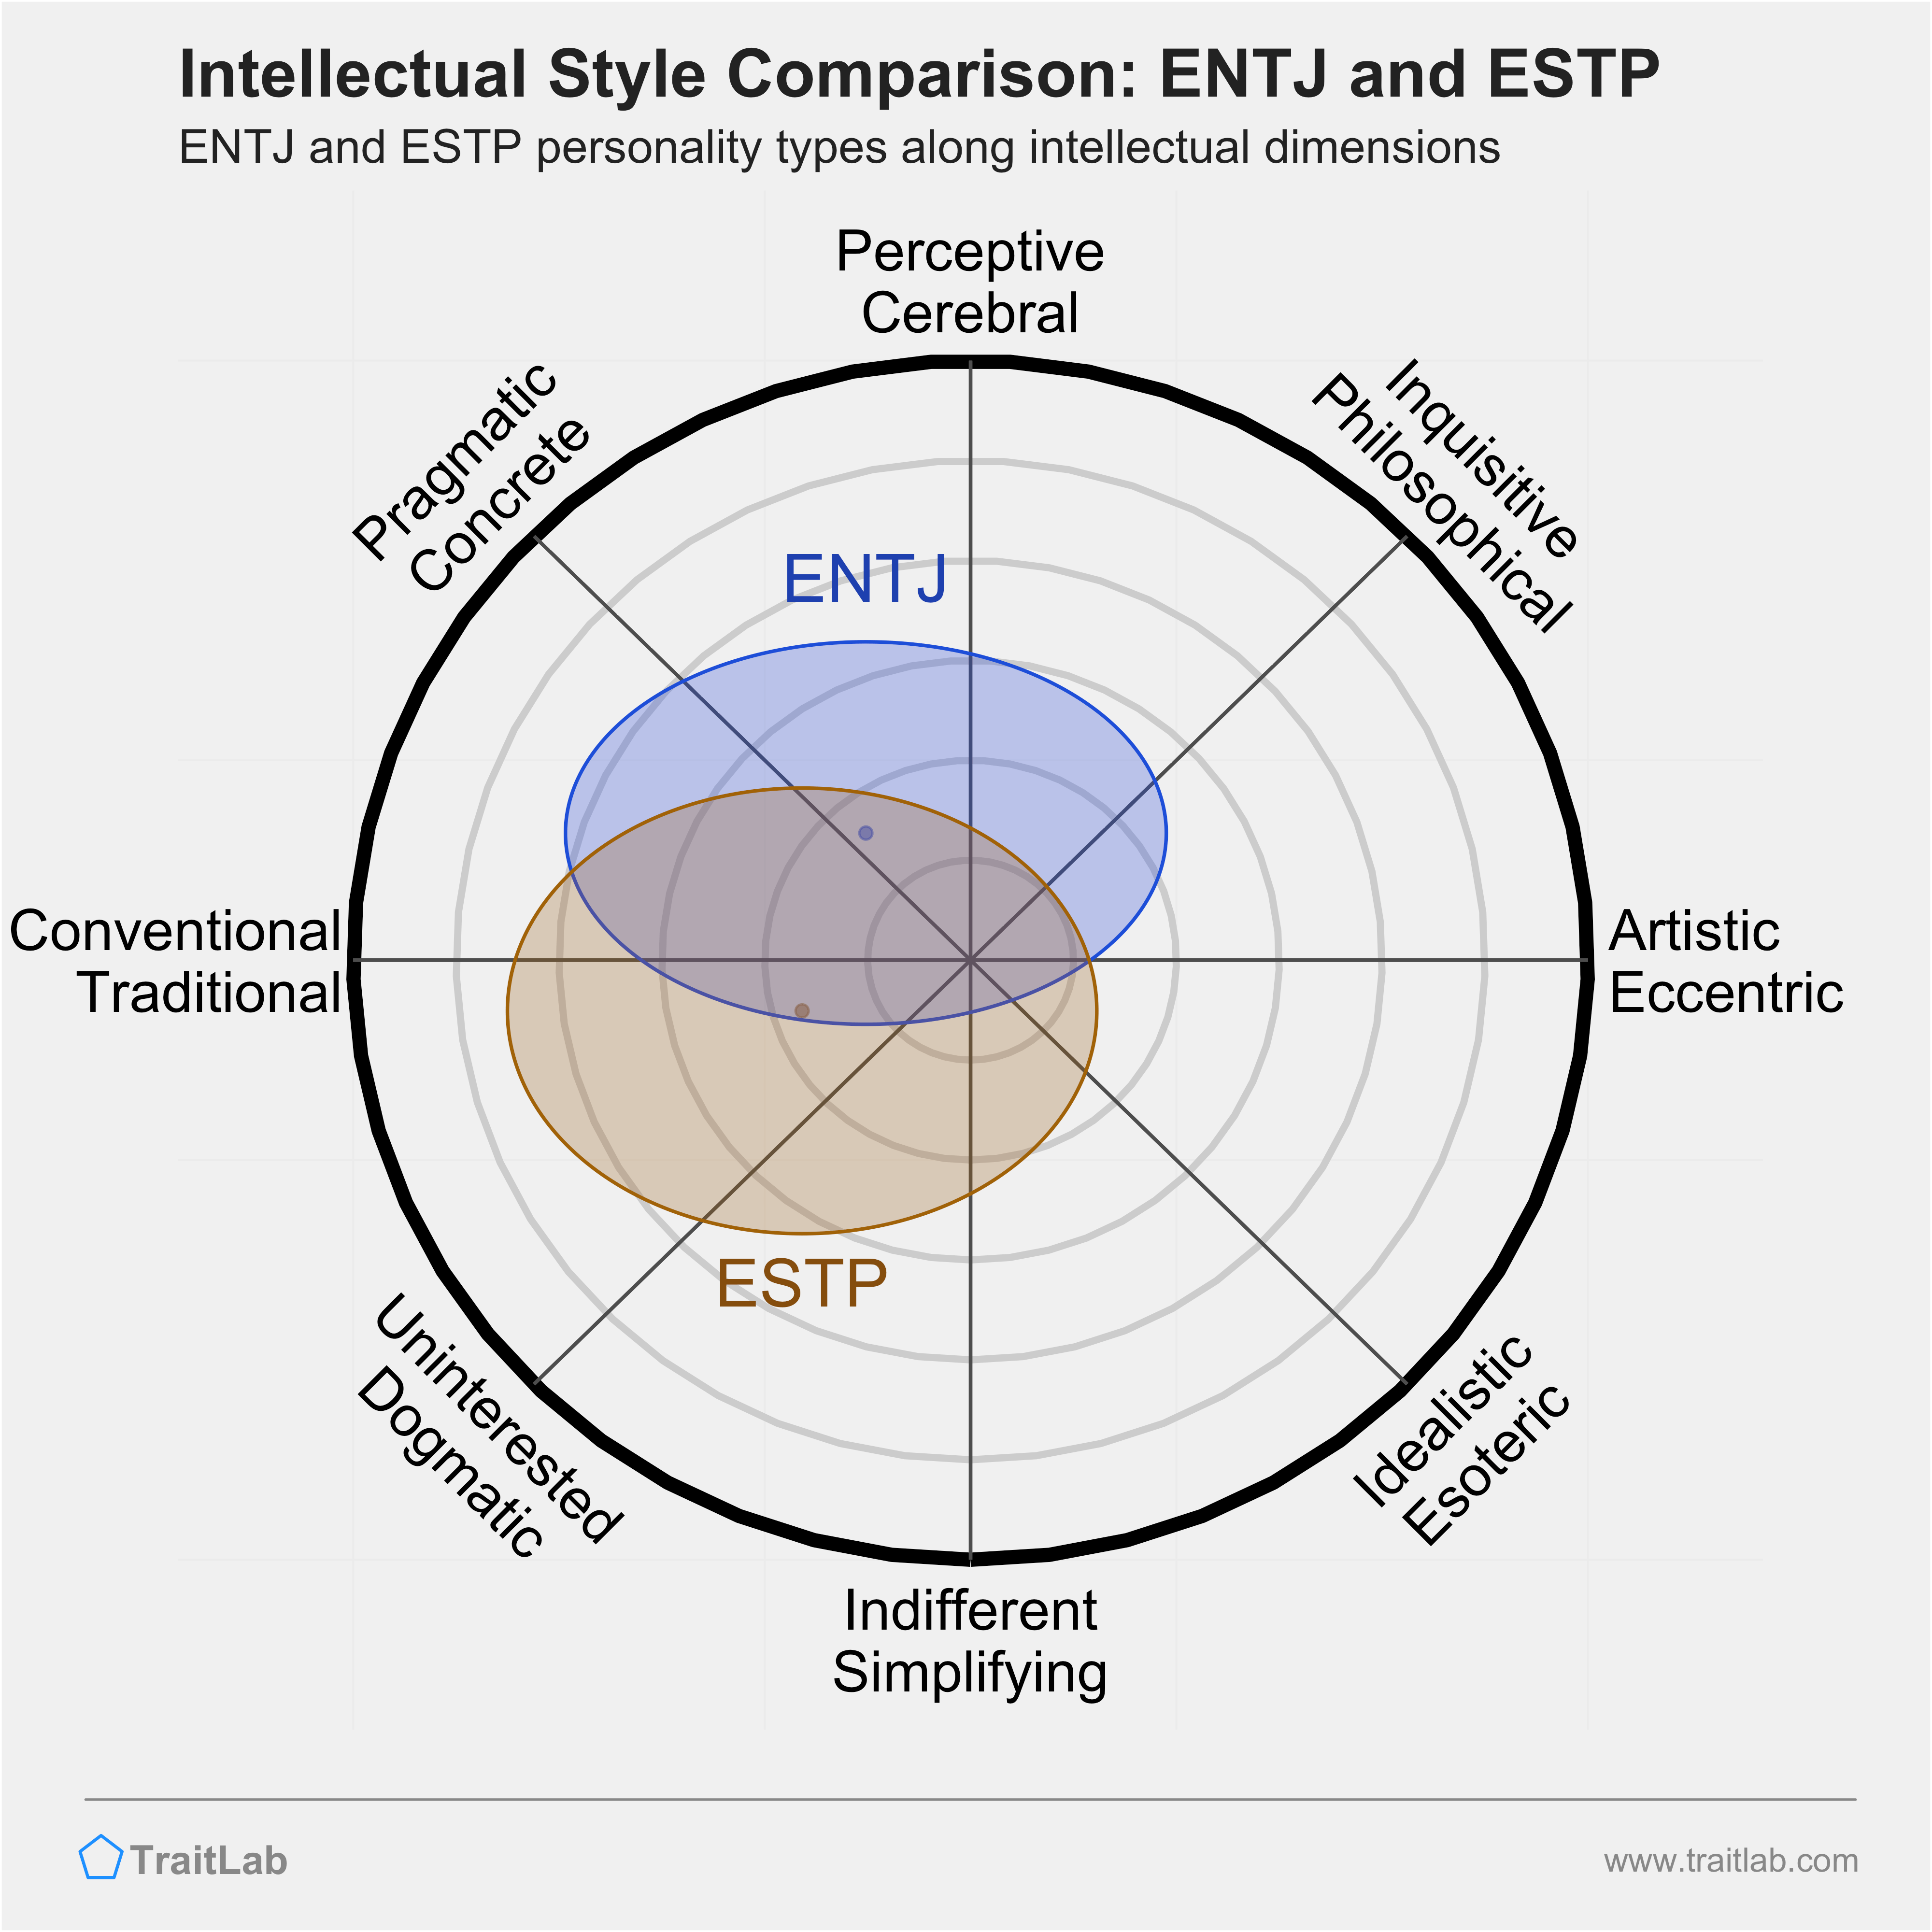 ENTJ and ESTP comparison across intellectual dimensions